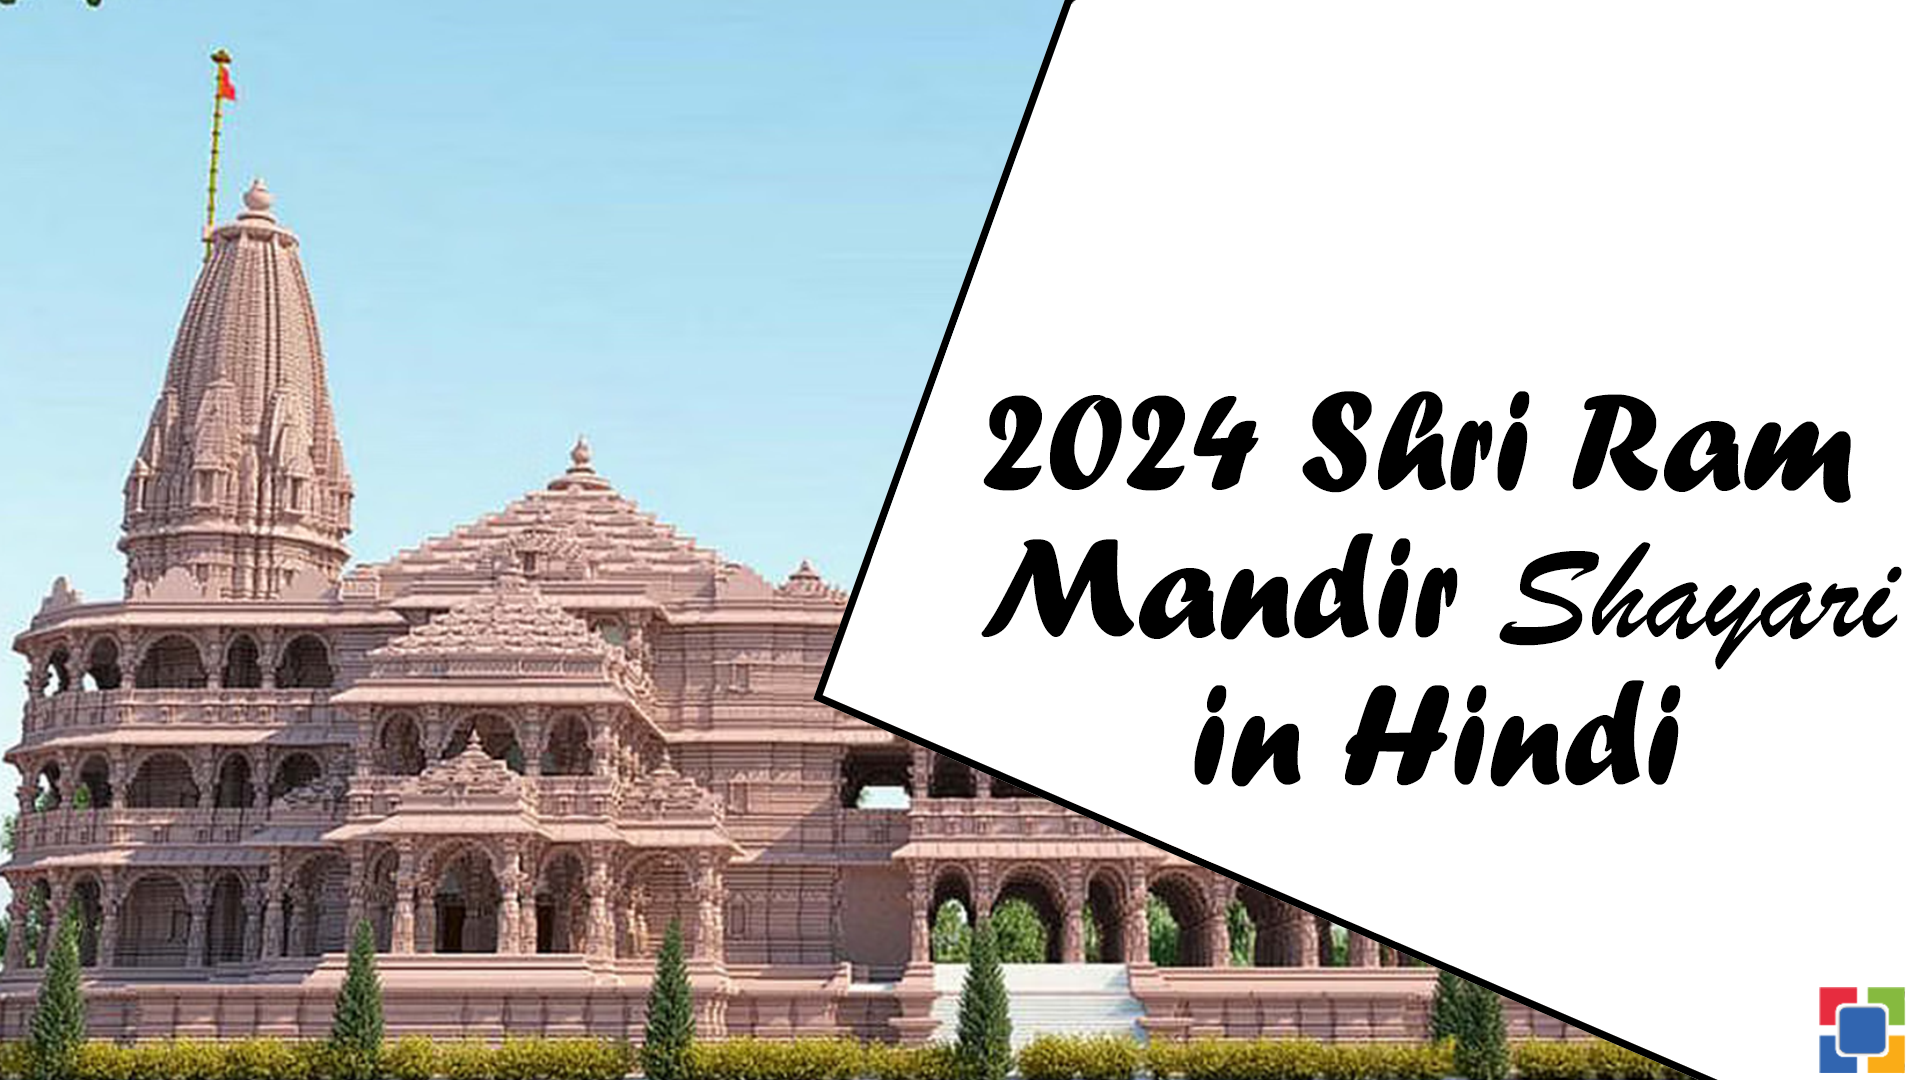 Shri Ram Mandir Shayari in Hindi